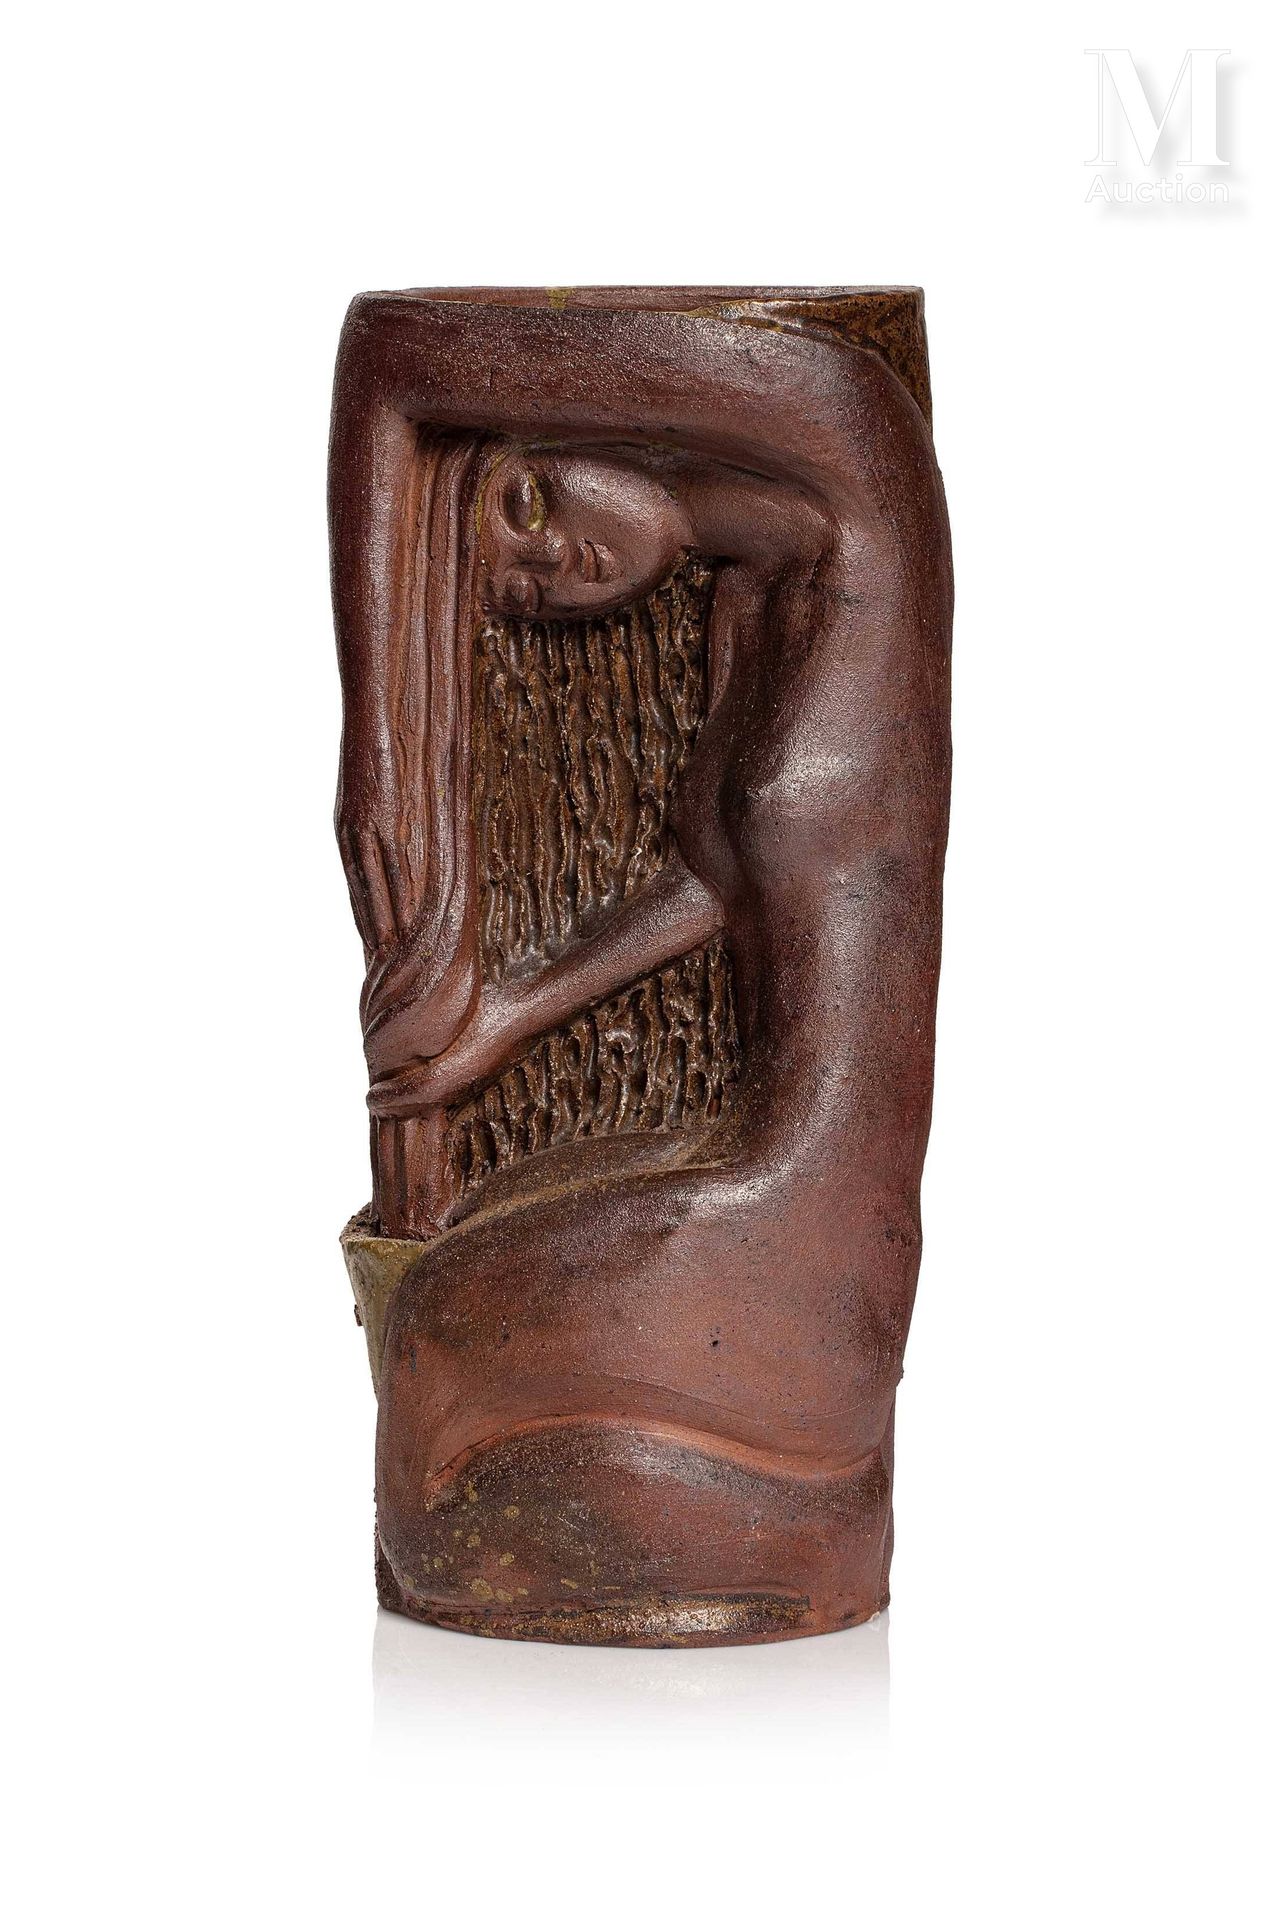 VIETNAM, XXe siècle, Vase en grés émaillé 描绘了一个年轻女人在厕所的情景

背面有M.HOA的印章

高度：33厘米